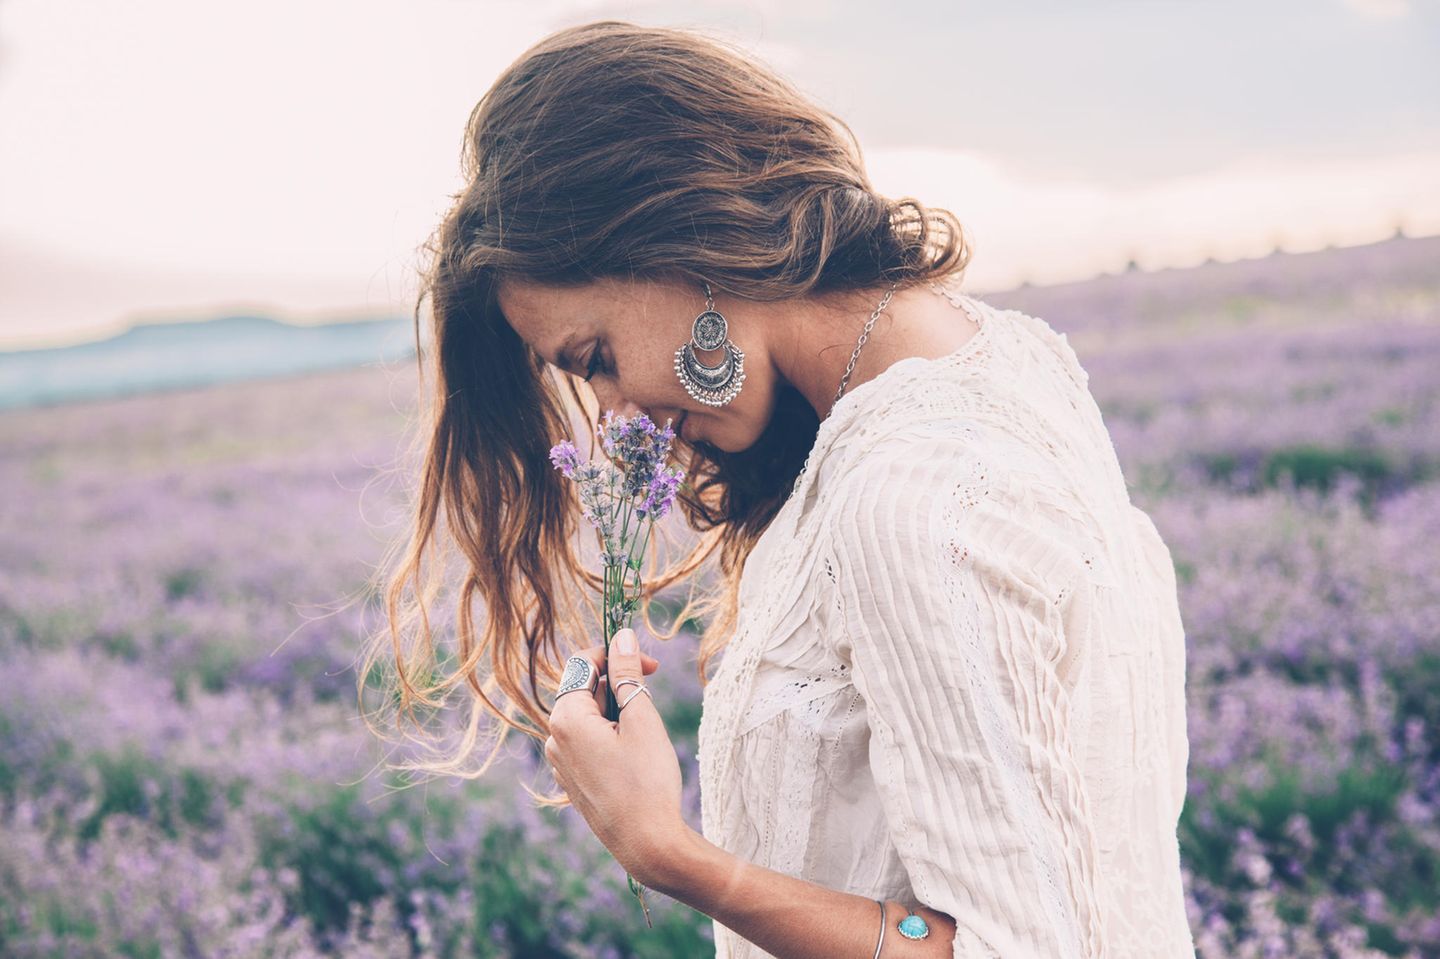 Düfte und ihre Wirkung: Frau riecht an Lavendel